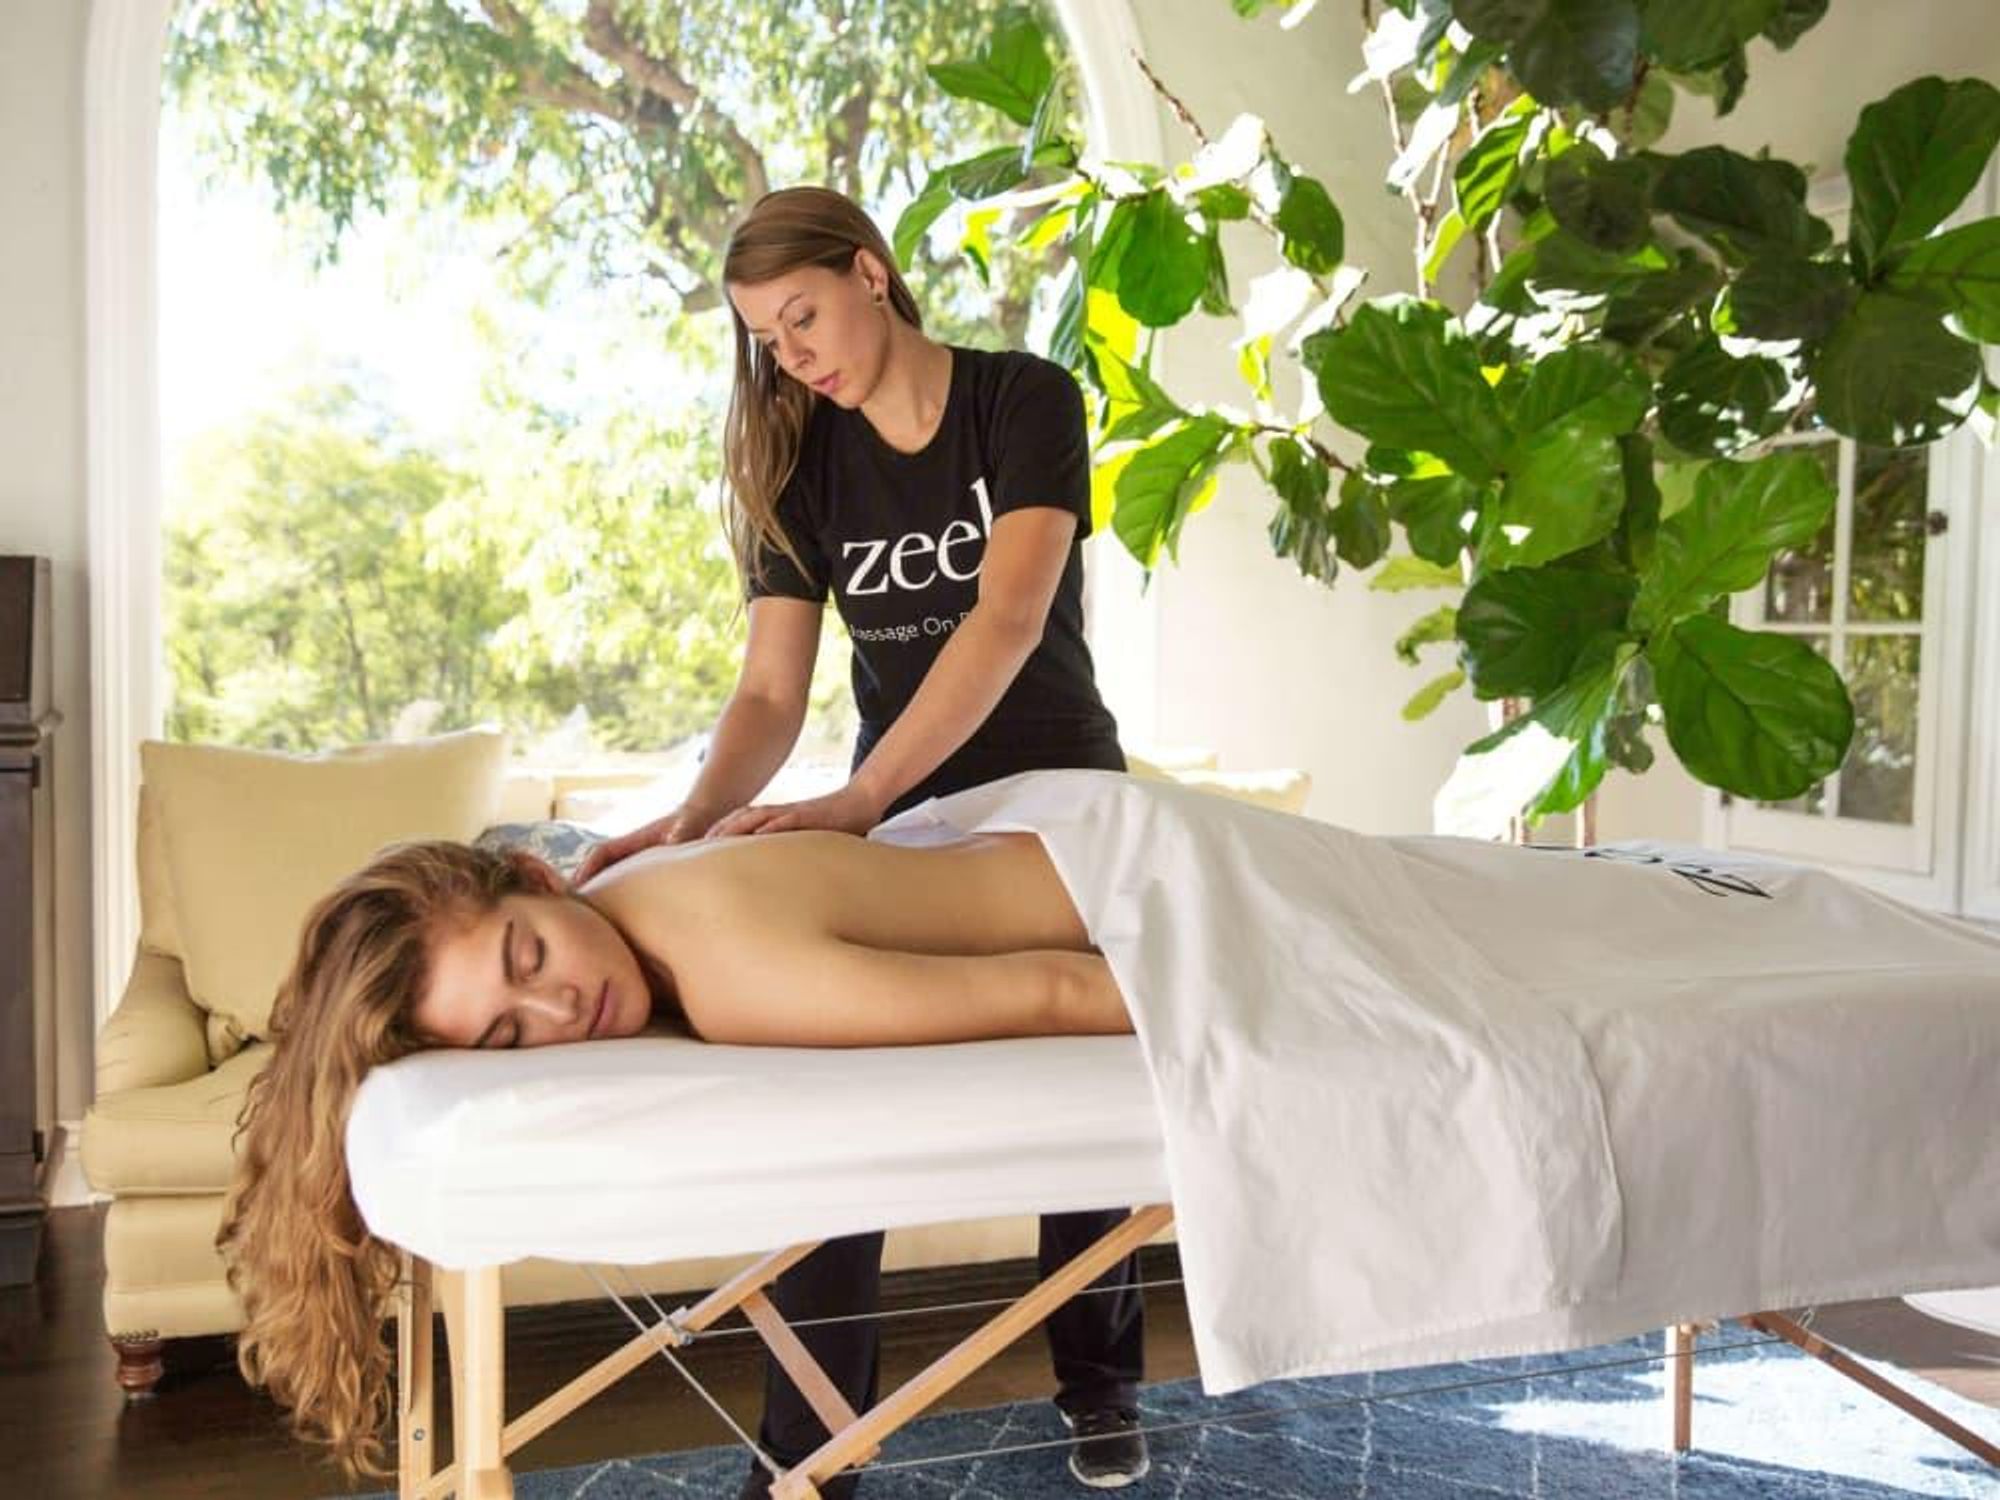 Zeel massage on demand app therapist in home